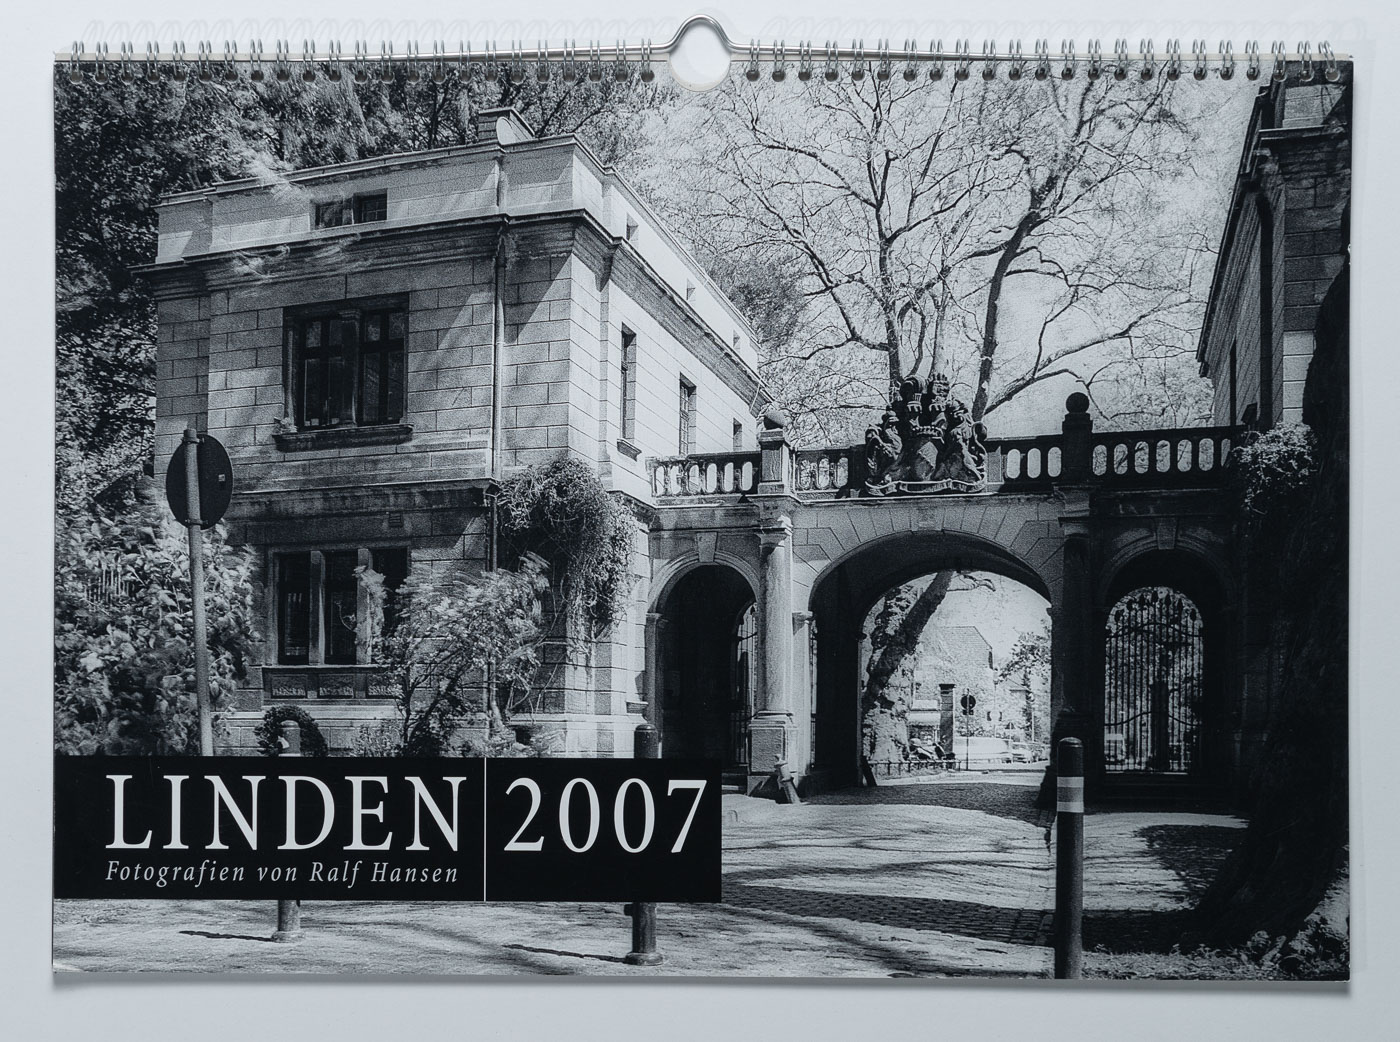 Lindenkalender LINDEN 2007